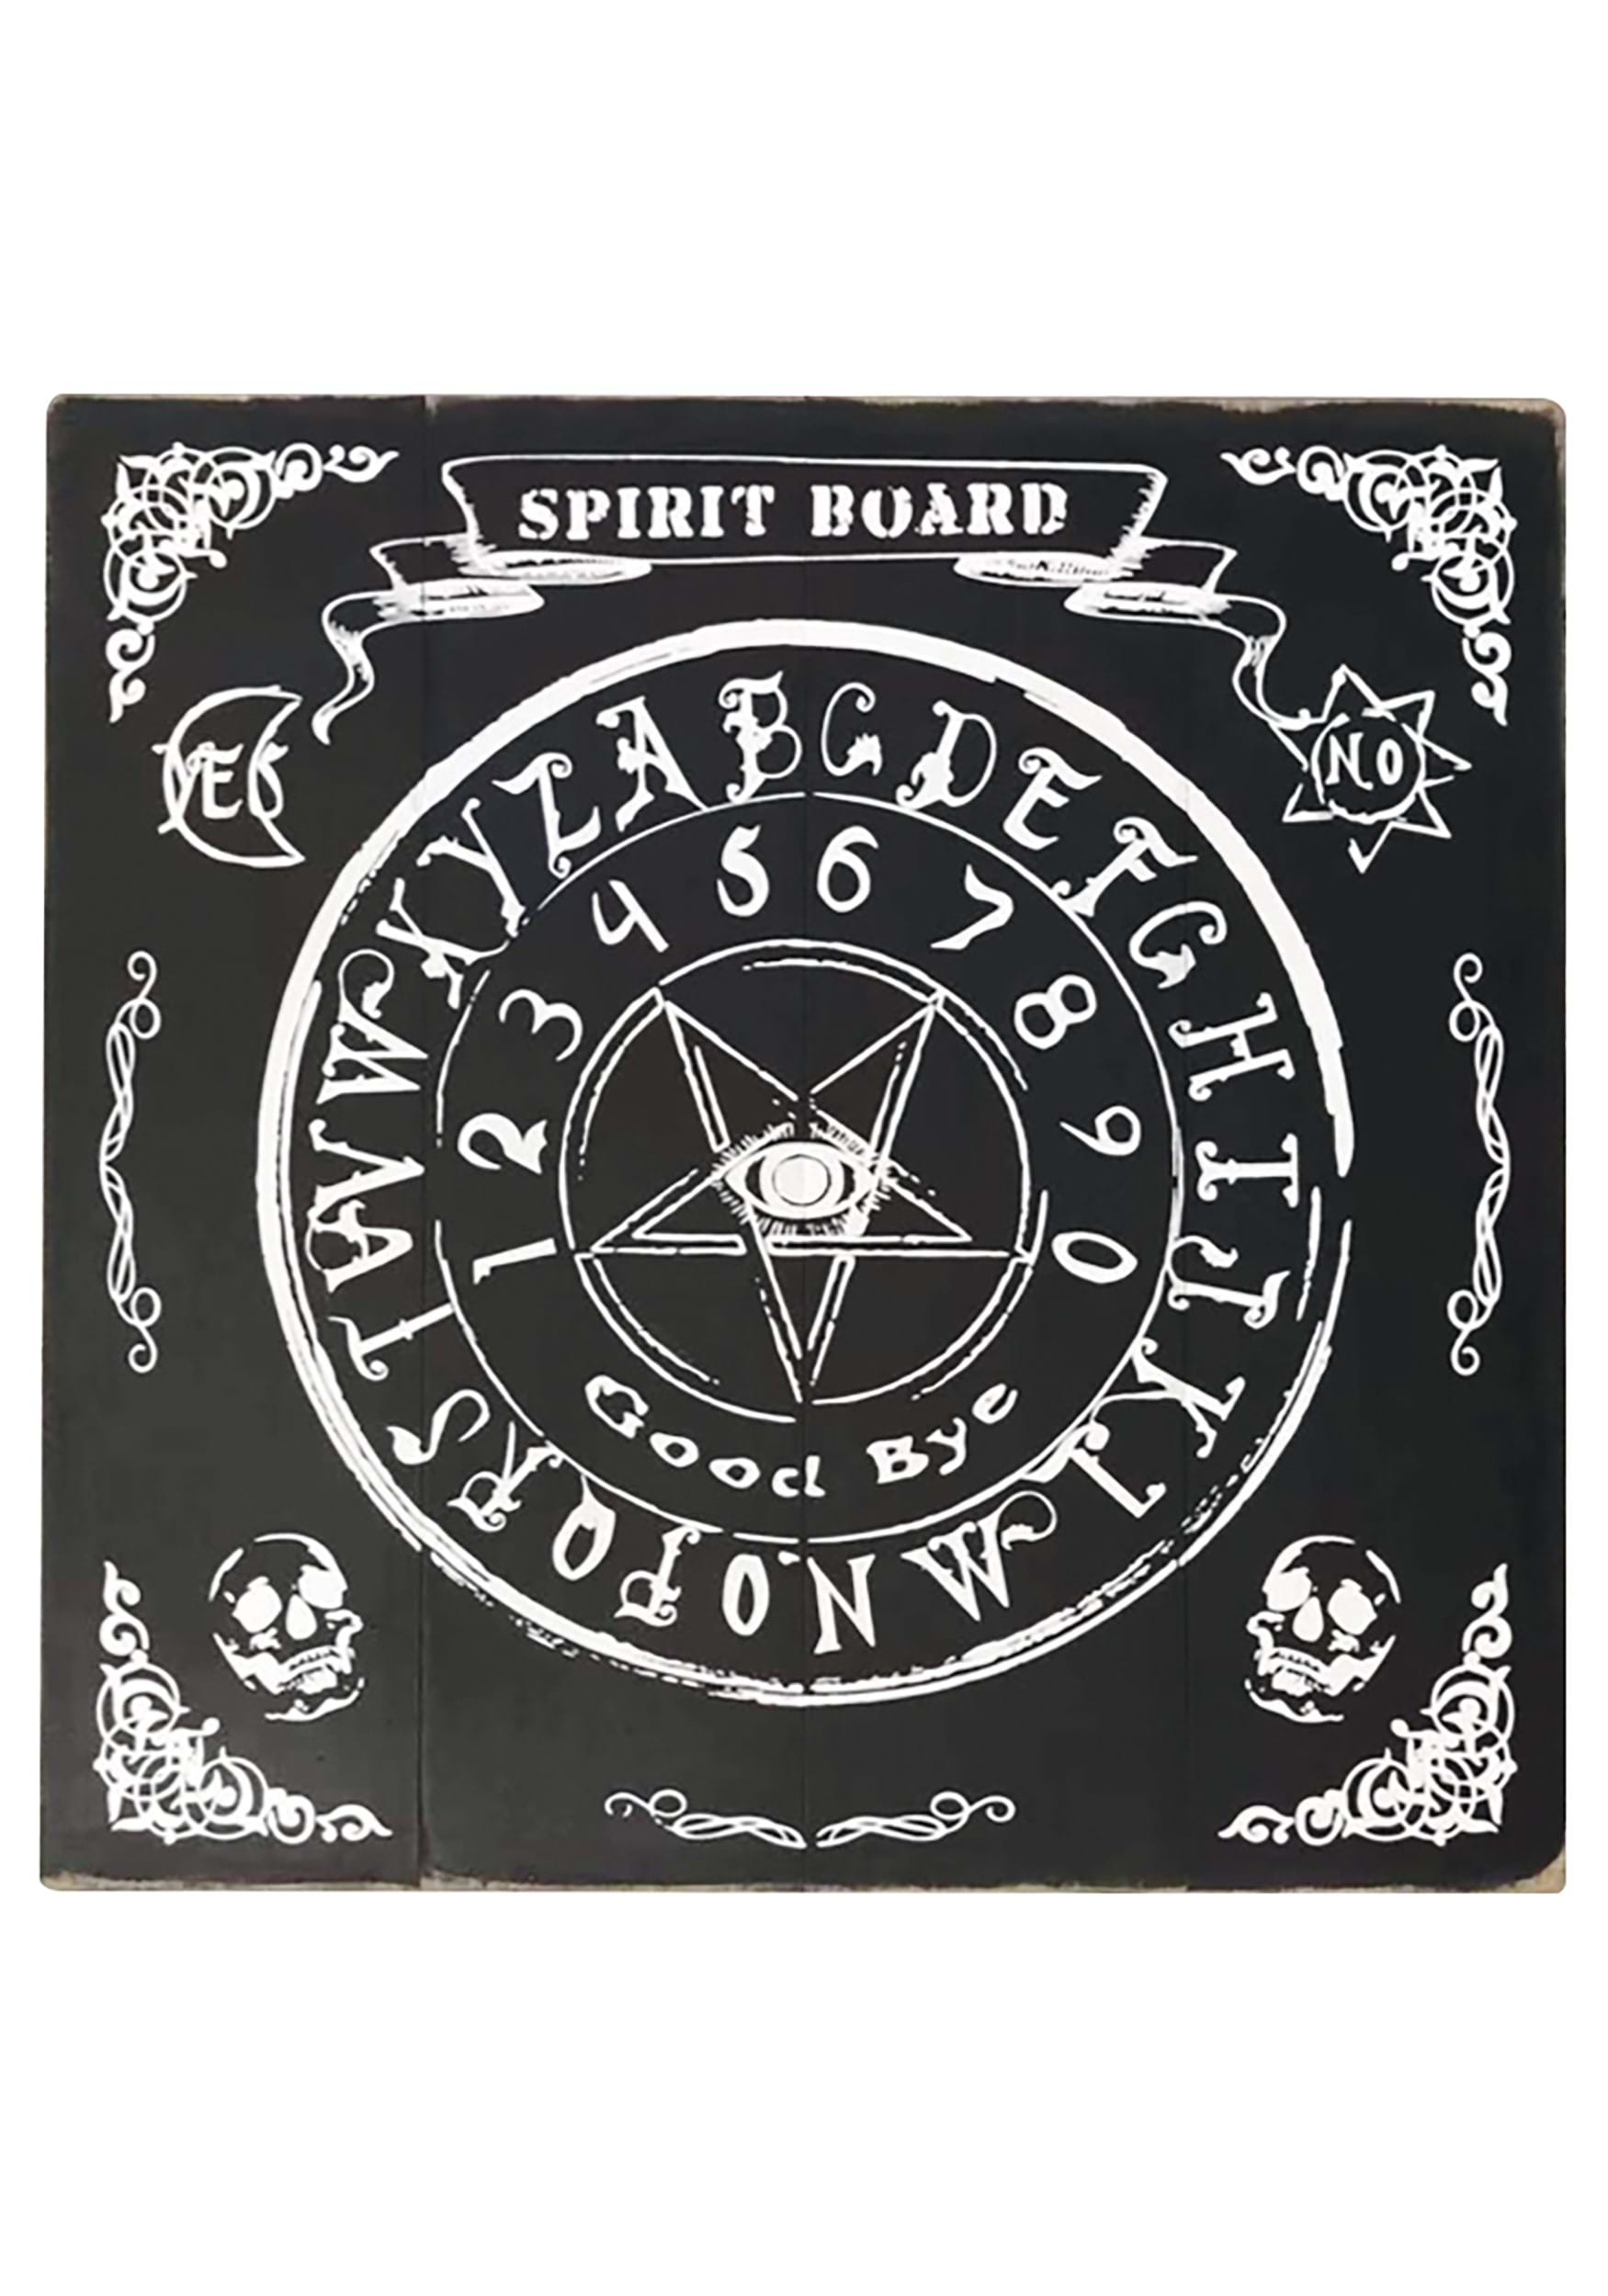 18″ Hanging Spirit Board Sign